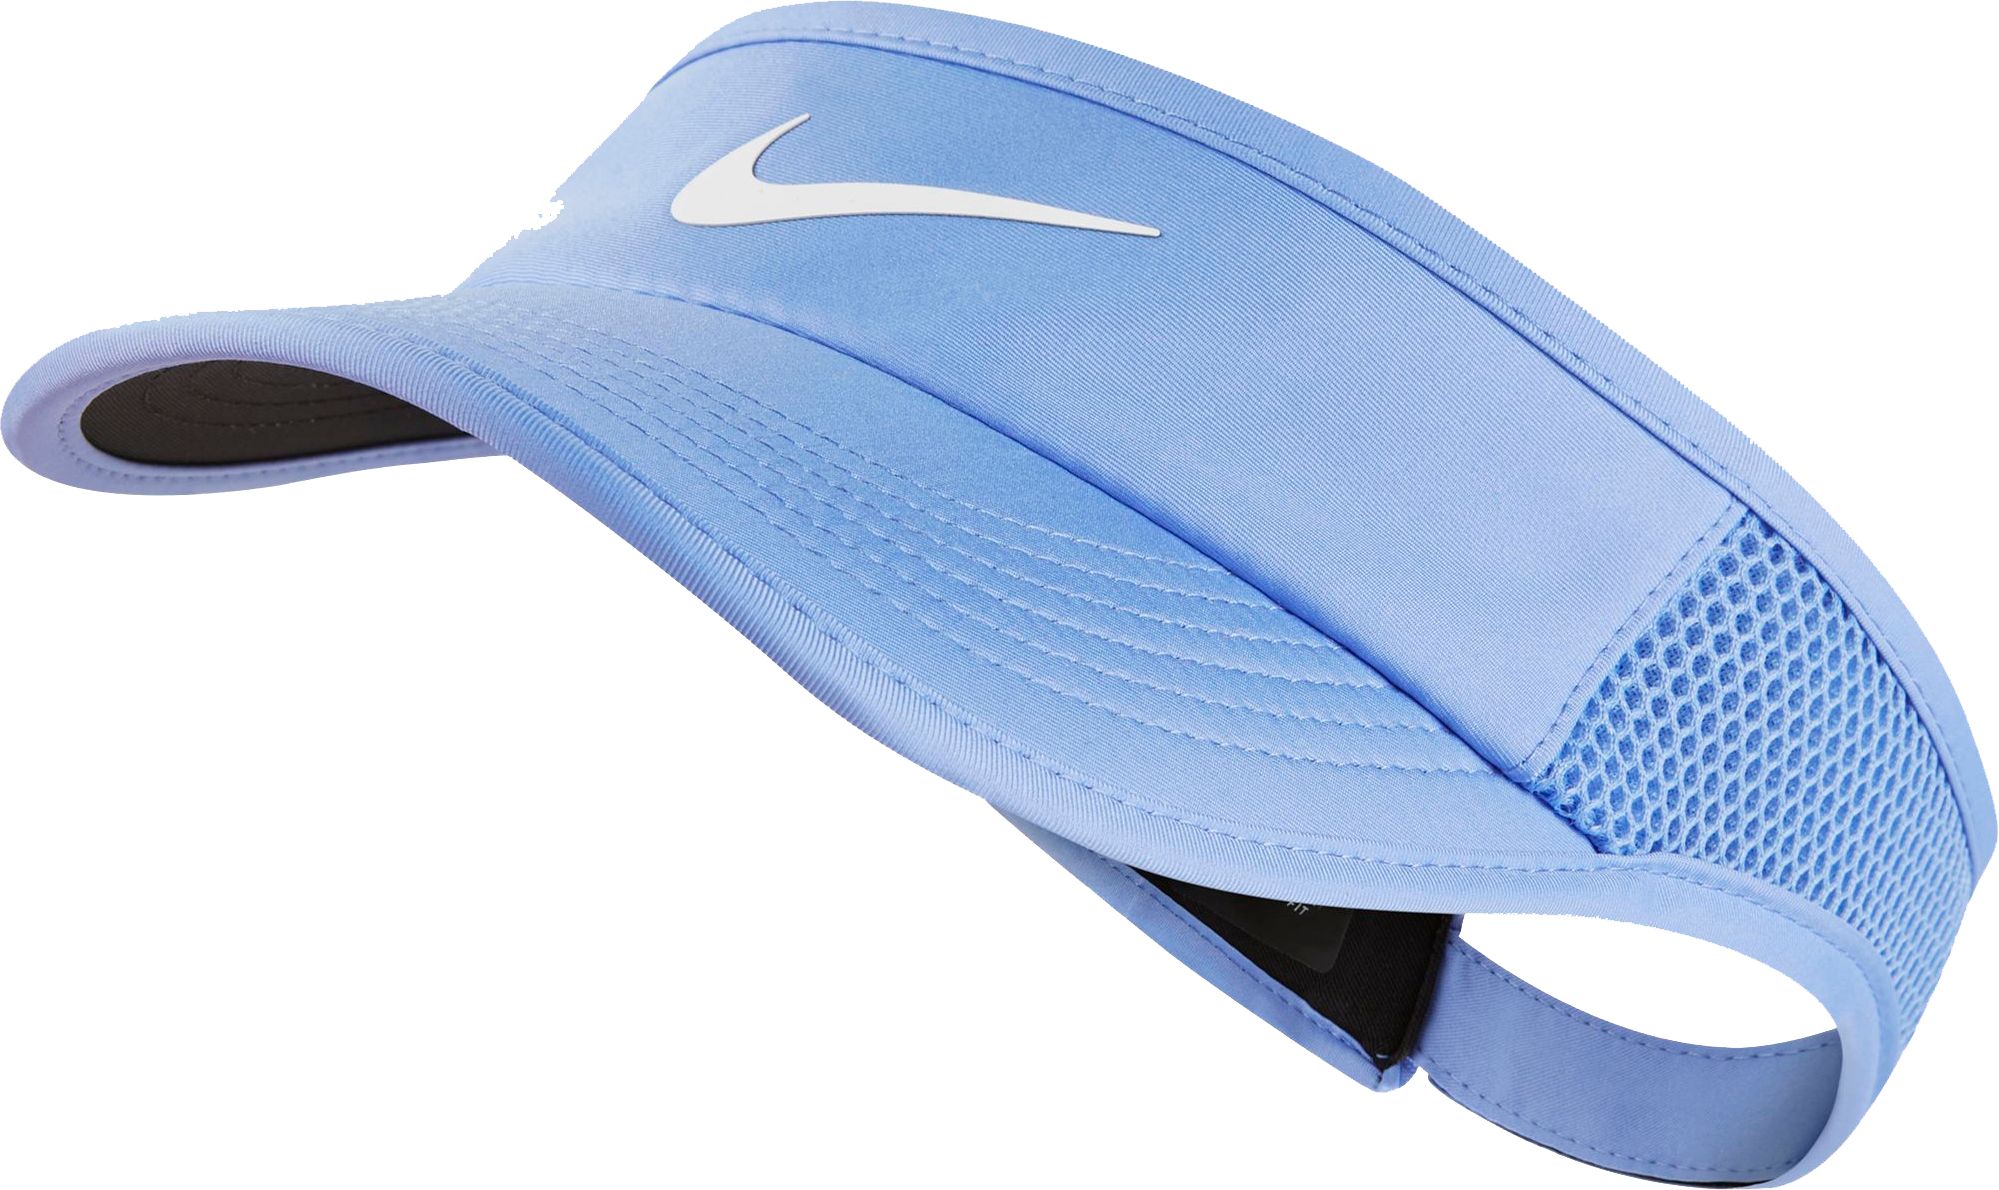 nikecourt women's featherlight aerobill tennis visor